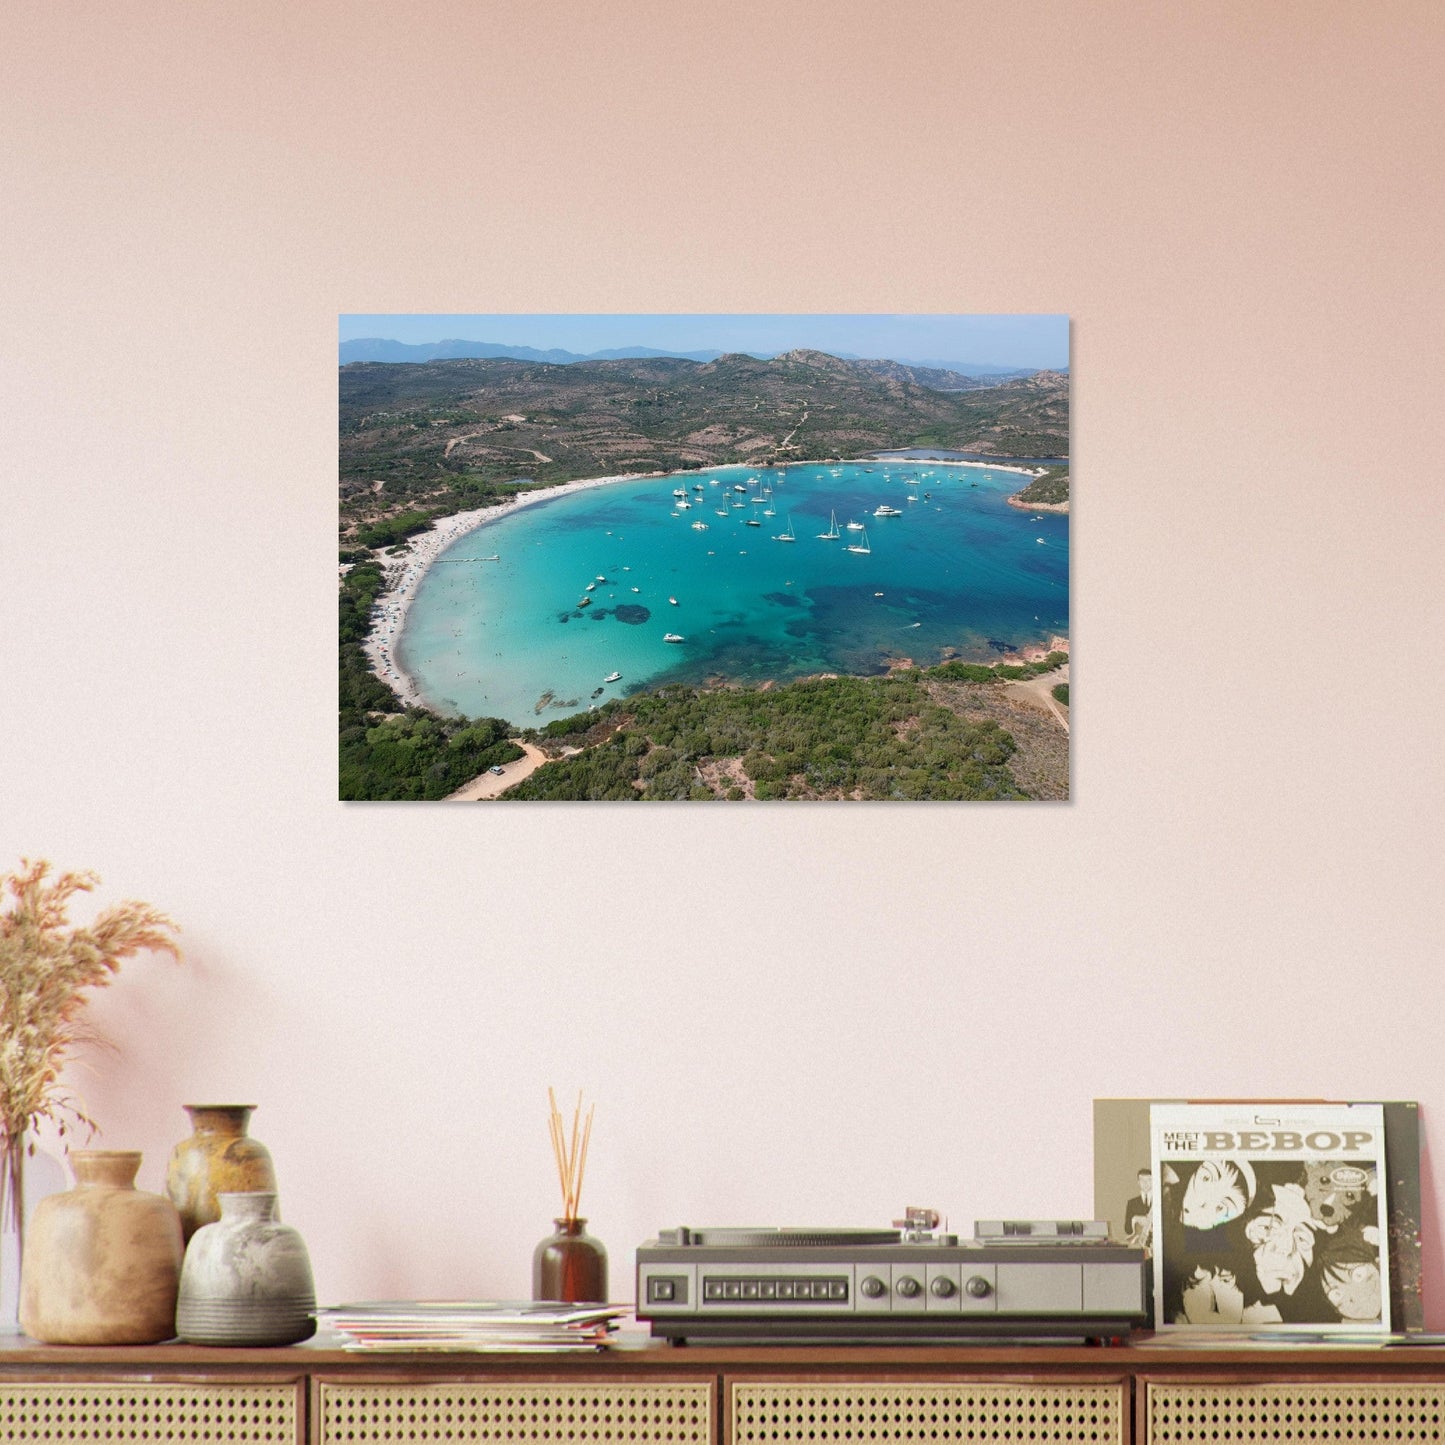 Vente Photo de la plage de la Baie de Santa-Manza, Corse #2 - Tableau photo paysage